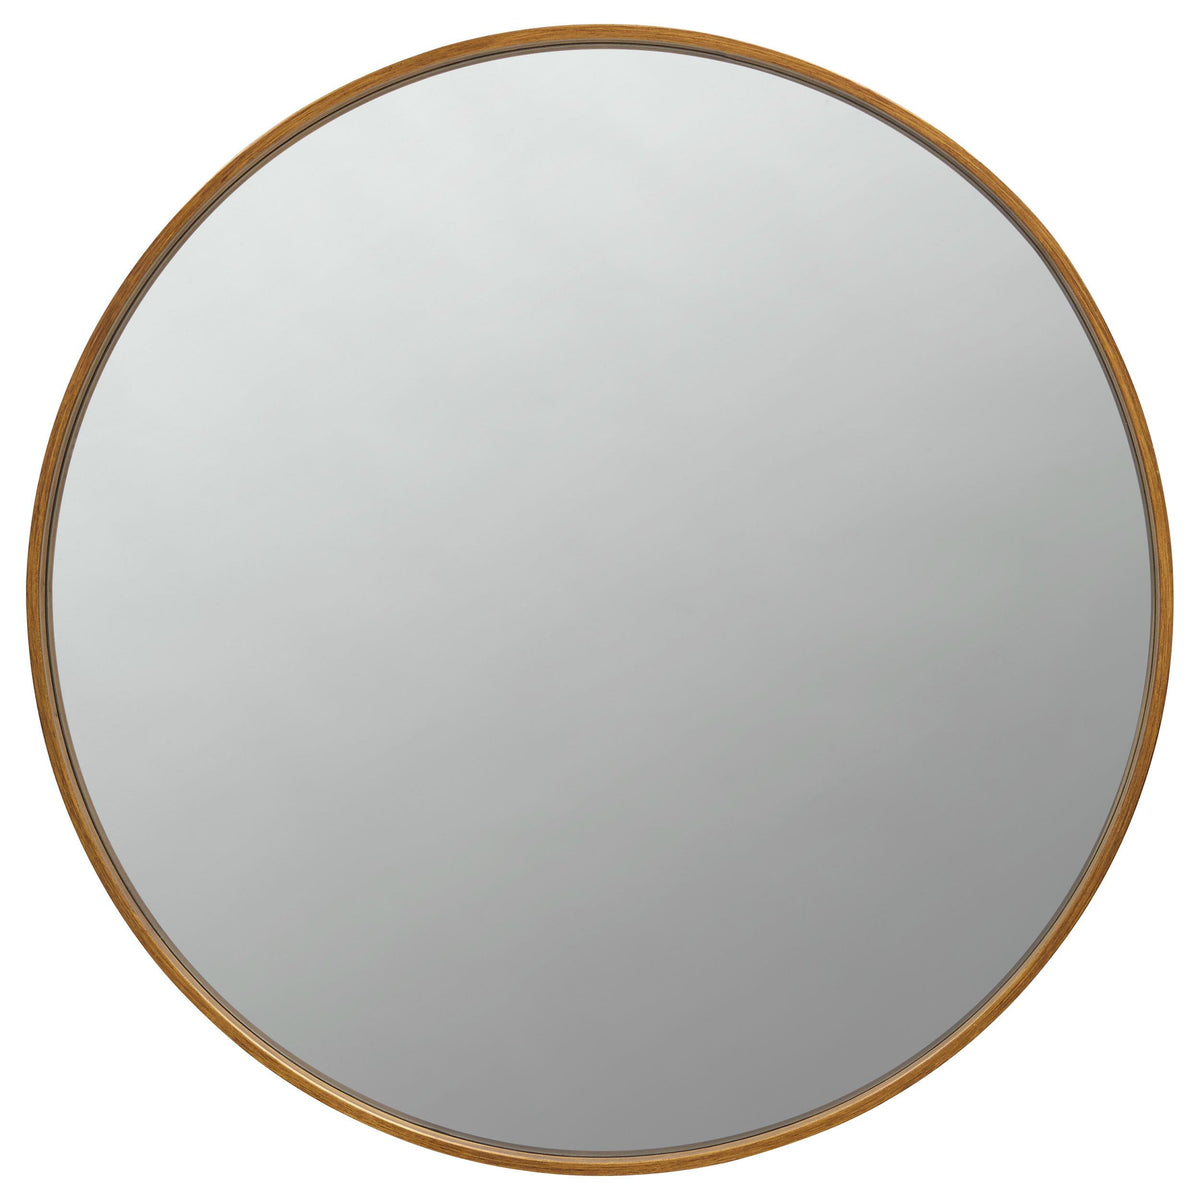 O'Malley Round Mirror Brass  Half Price Furniture